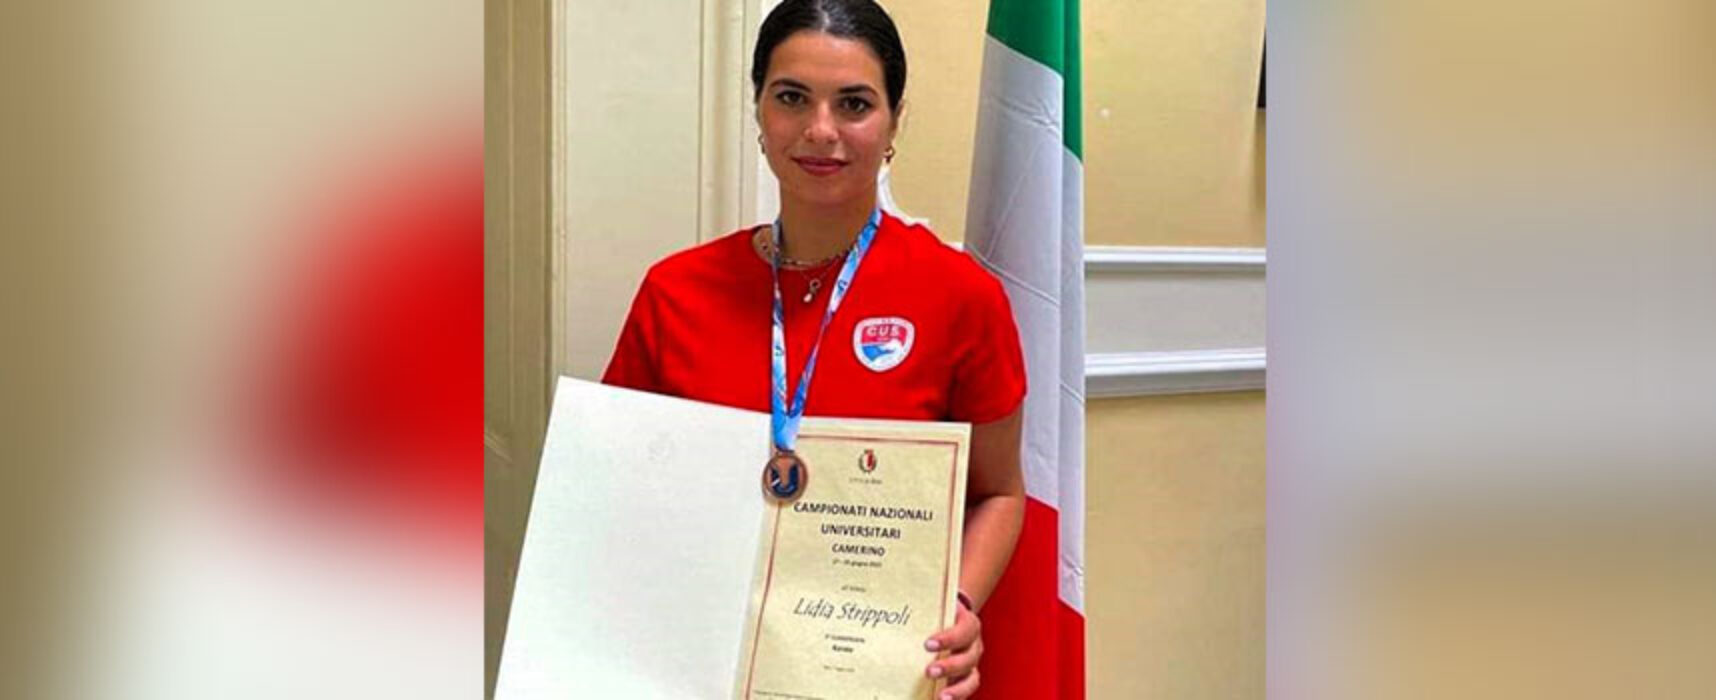 Karate, buon risultato per Lidia Strippoli ai campionati Italiani Under 21